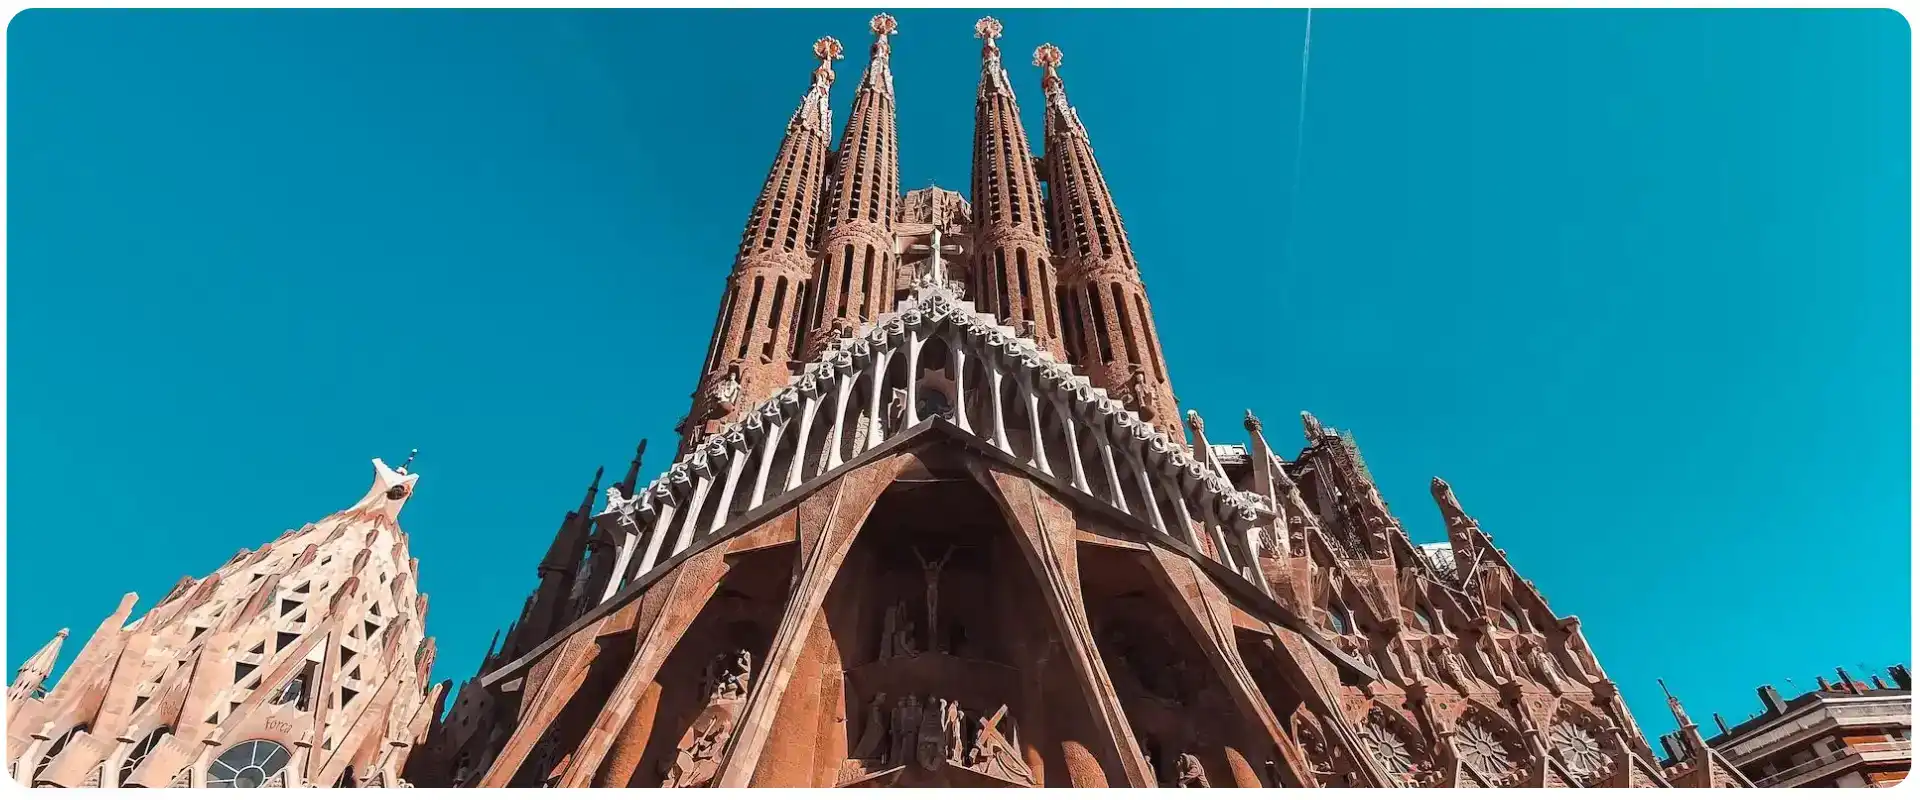 Charterrejser til Barcelona Sagrada Familia flyv fra hamborg.webp